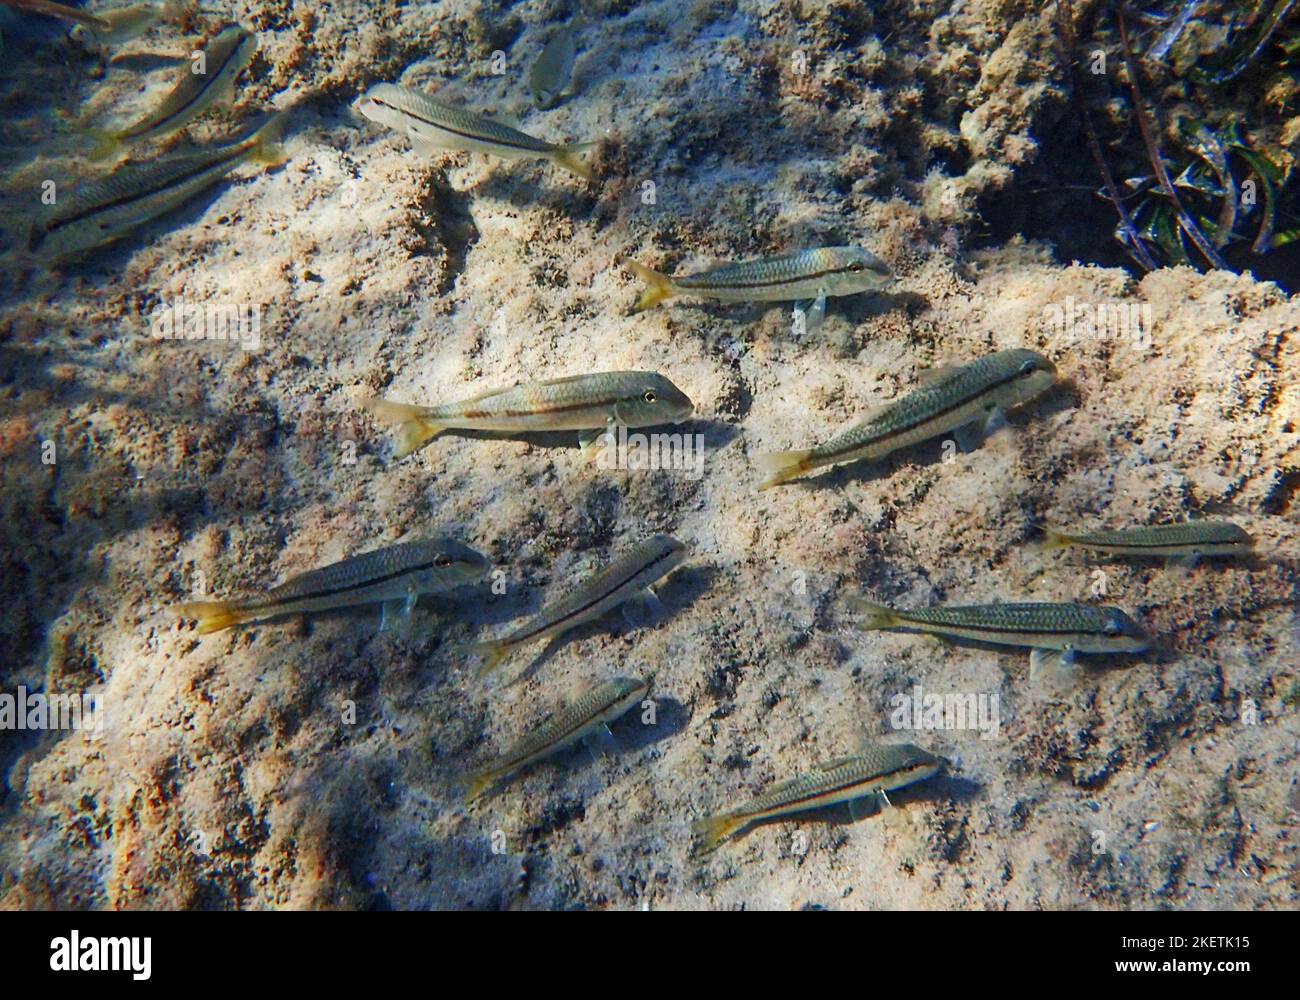 Hardyhead-Silberfisch (Atherinomorus lacunosus), der am Meeresboden des östlichen Mittelmeers, Zypern, ernährt wird. Stockfoto